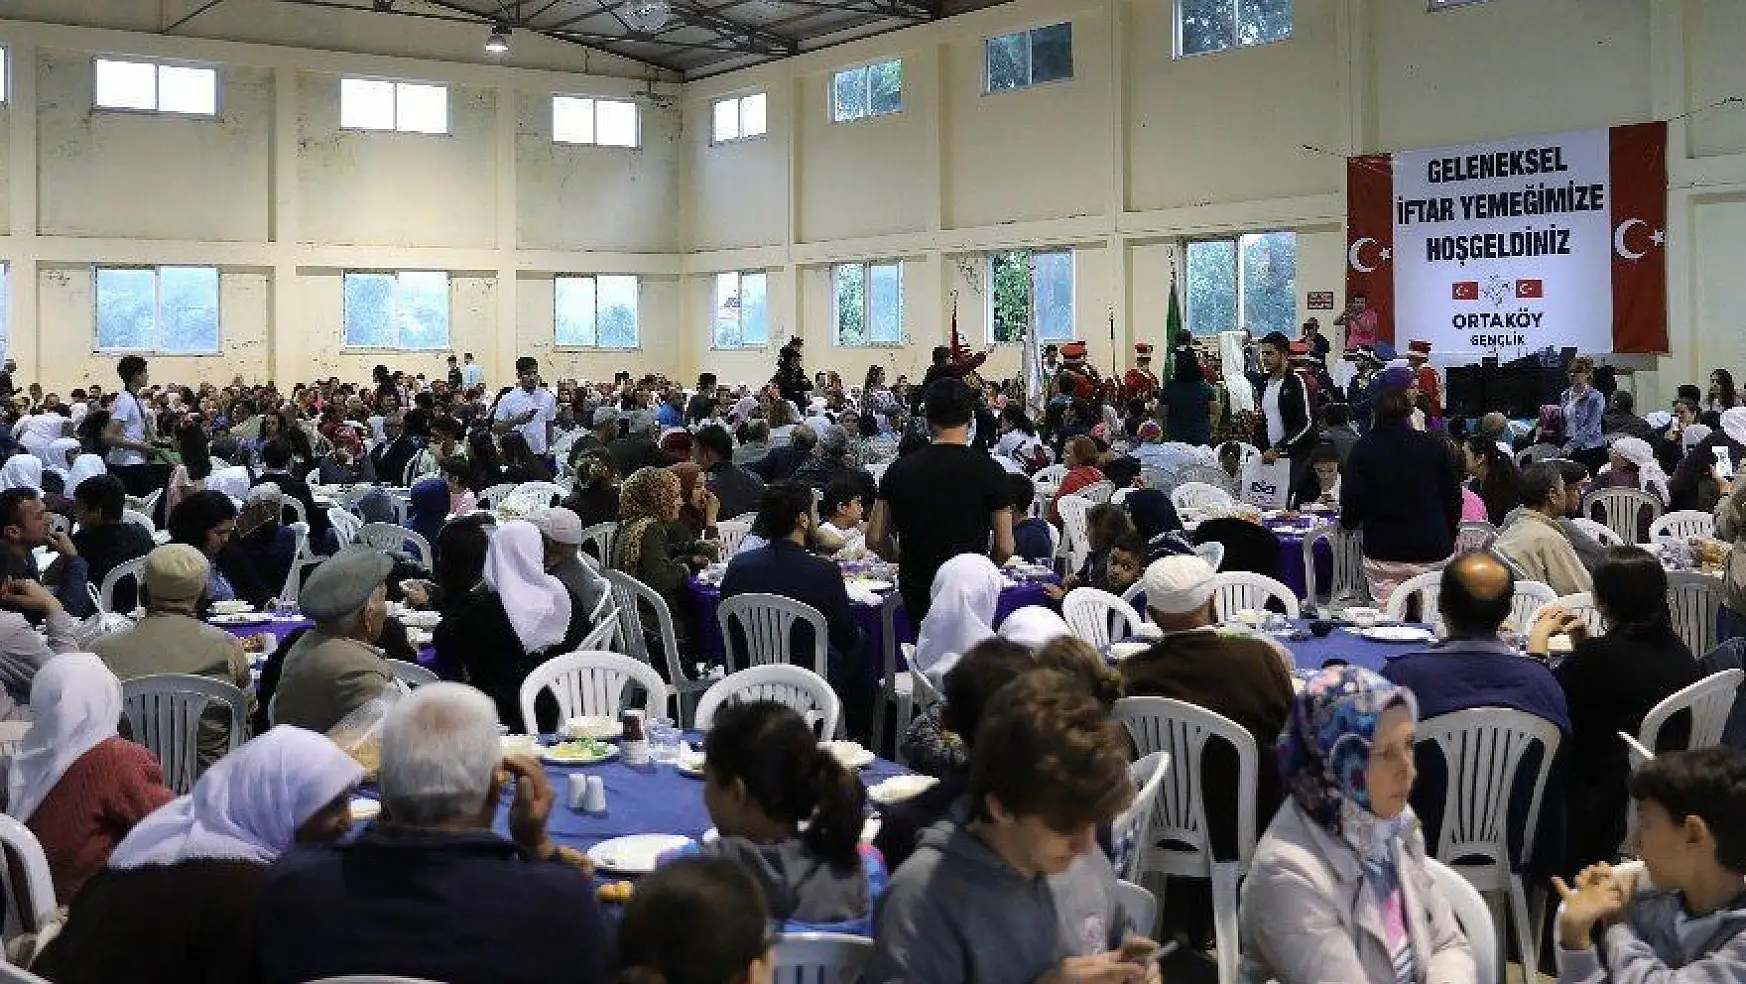 Ortaköy'lü gençlerden 2 bin kişilik iftar yemeği